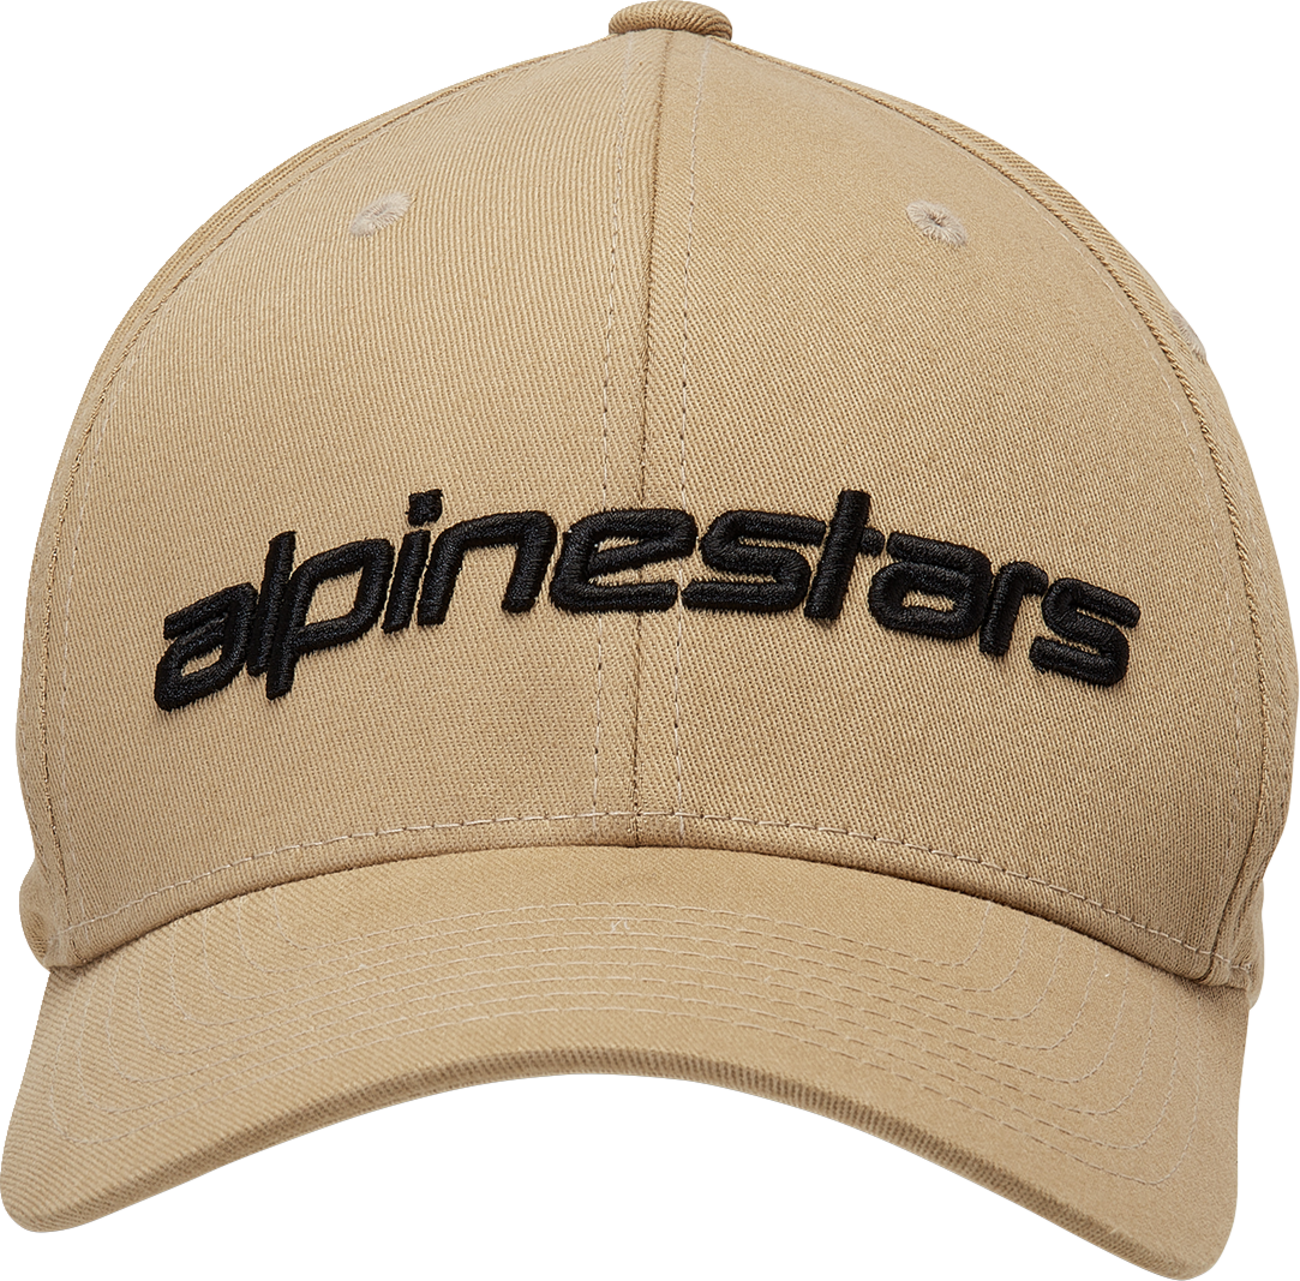 ALPINESTARS Linear Hat - Sand/Black - L/XL 1230810052310LX